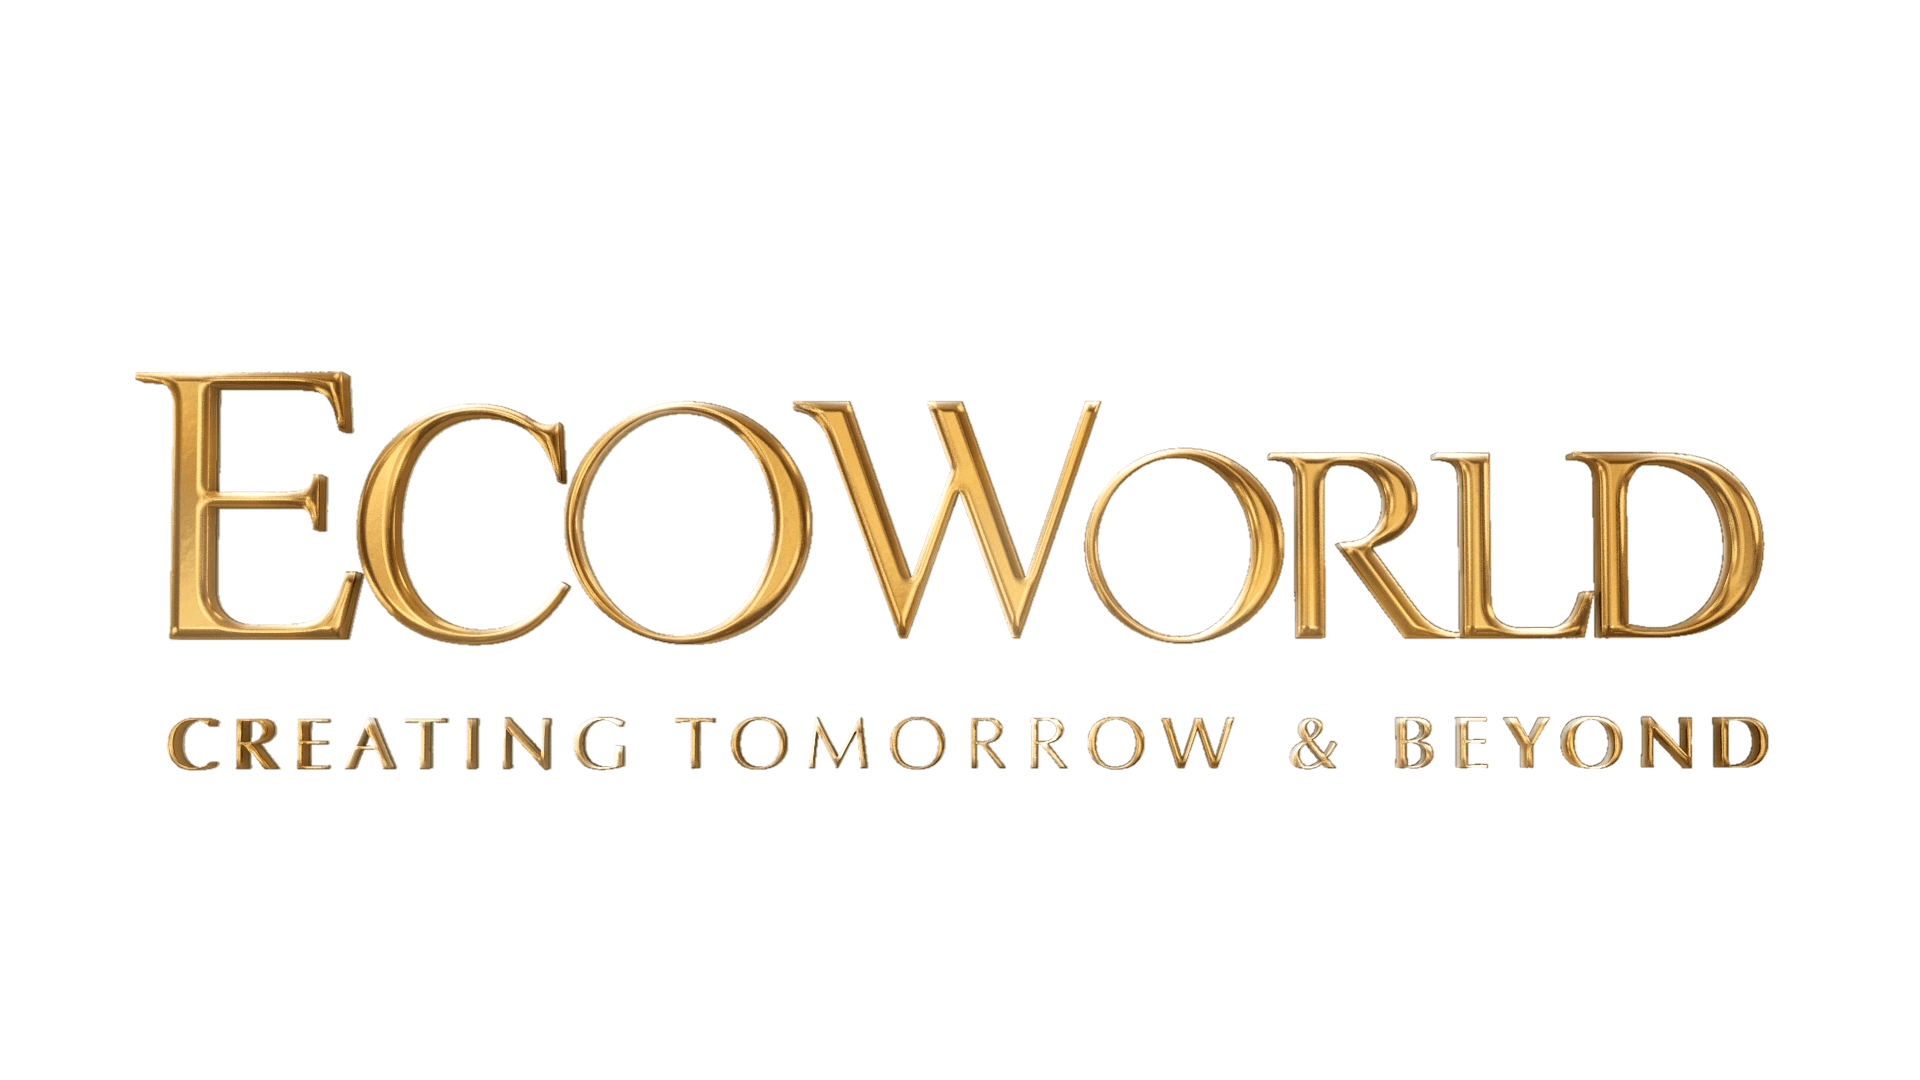 ecoworld-logo-3d.png